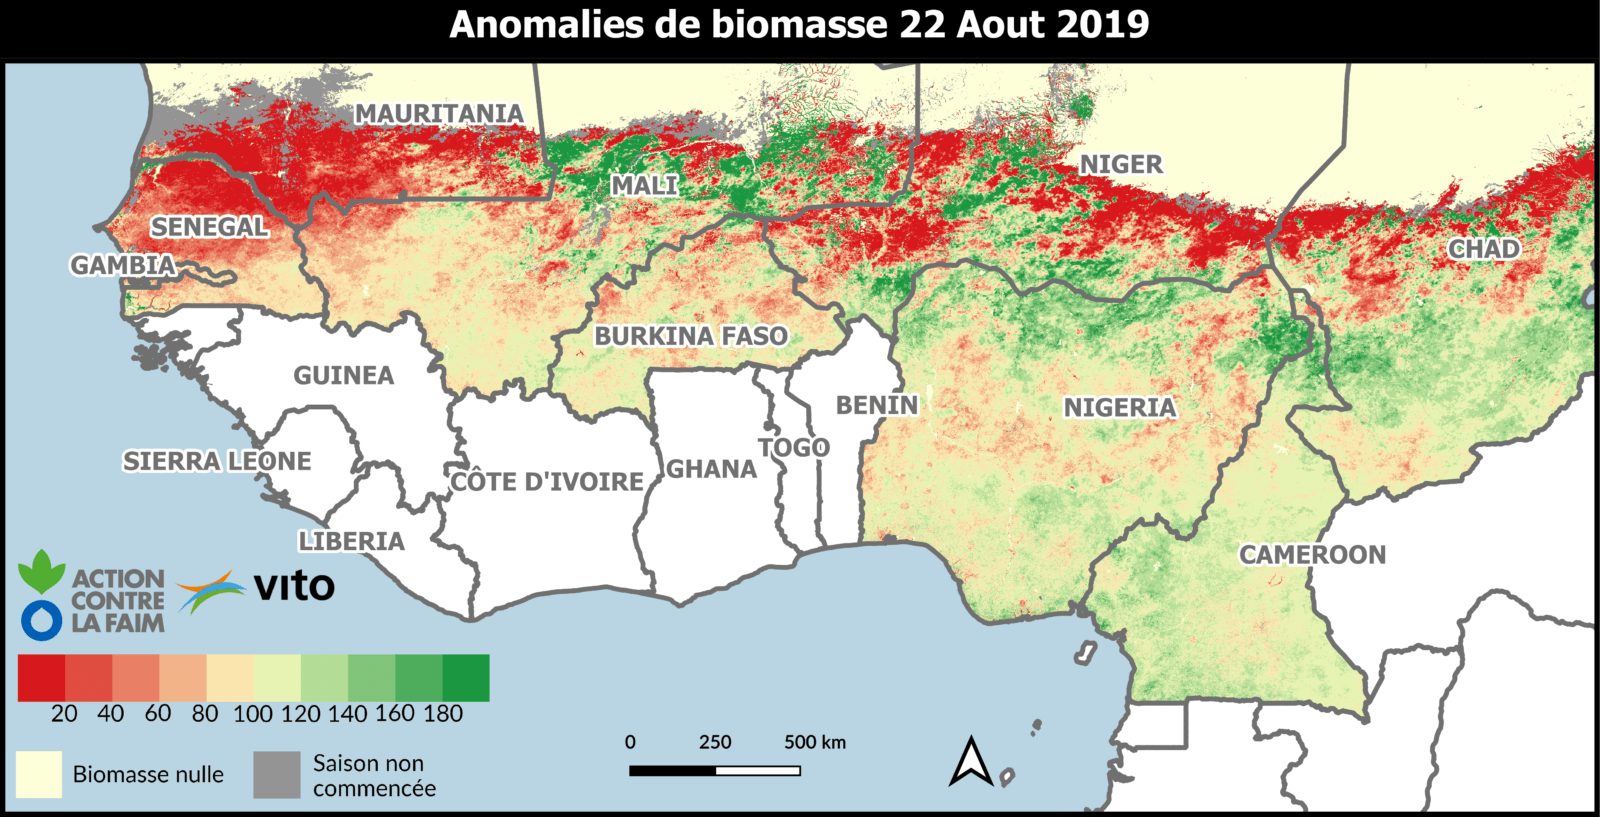 Bulletin d’information : Etat de la biomasse et de l’eau de surface au Sahel à la mi-saison de l’hivernage 2019